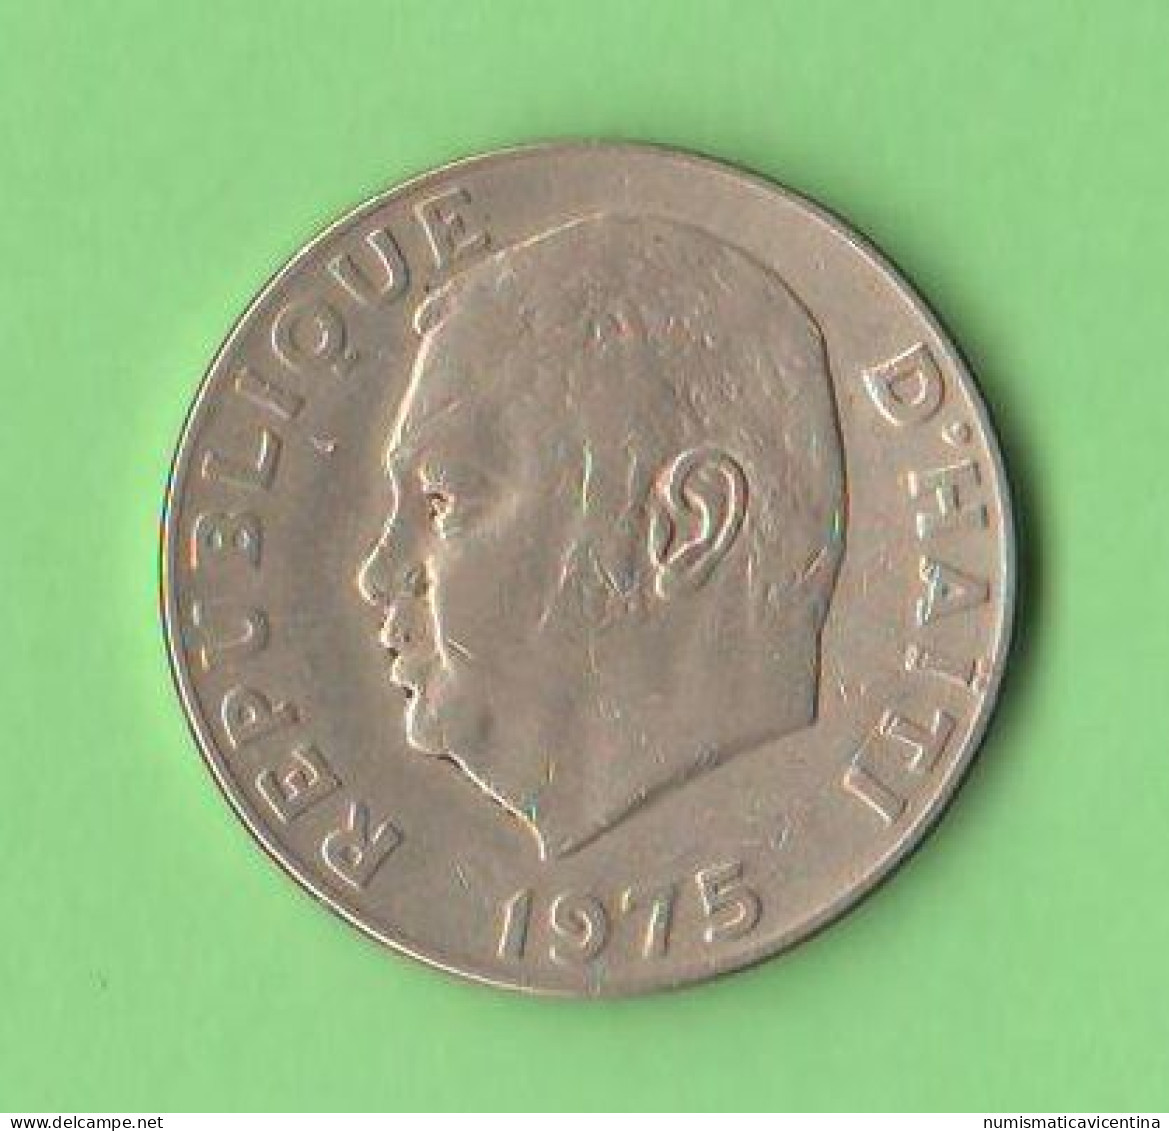 Haiti 20 Centimes 1975 FAO President Claude Duvalier Nickel  Coin - Haití